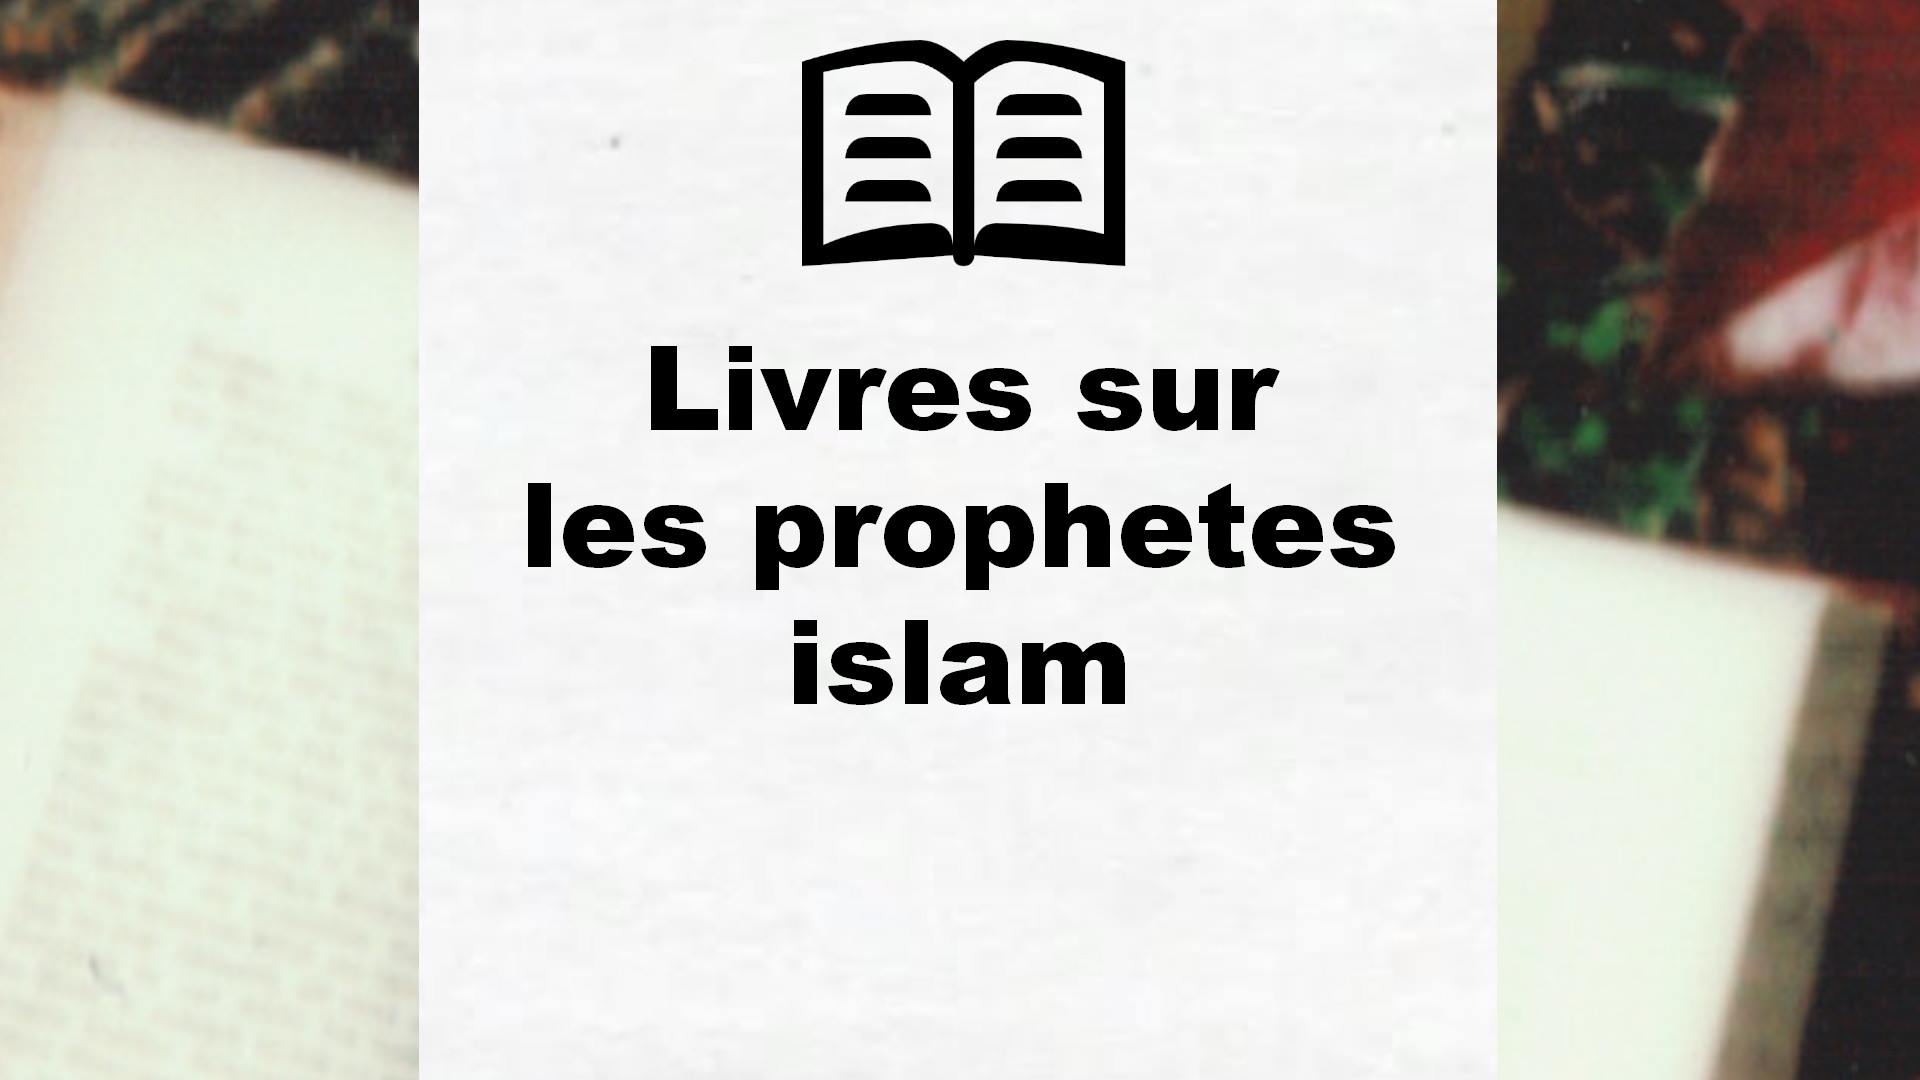 Livres sur les prophetes islam